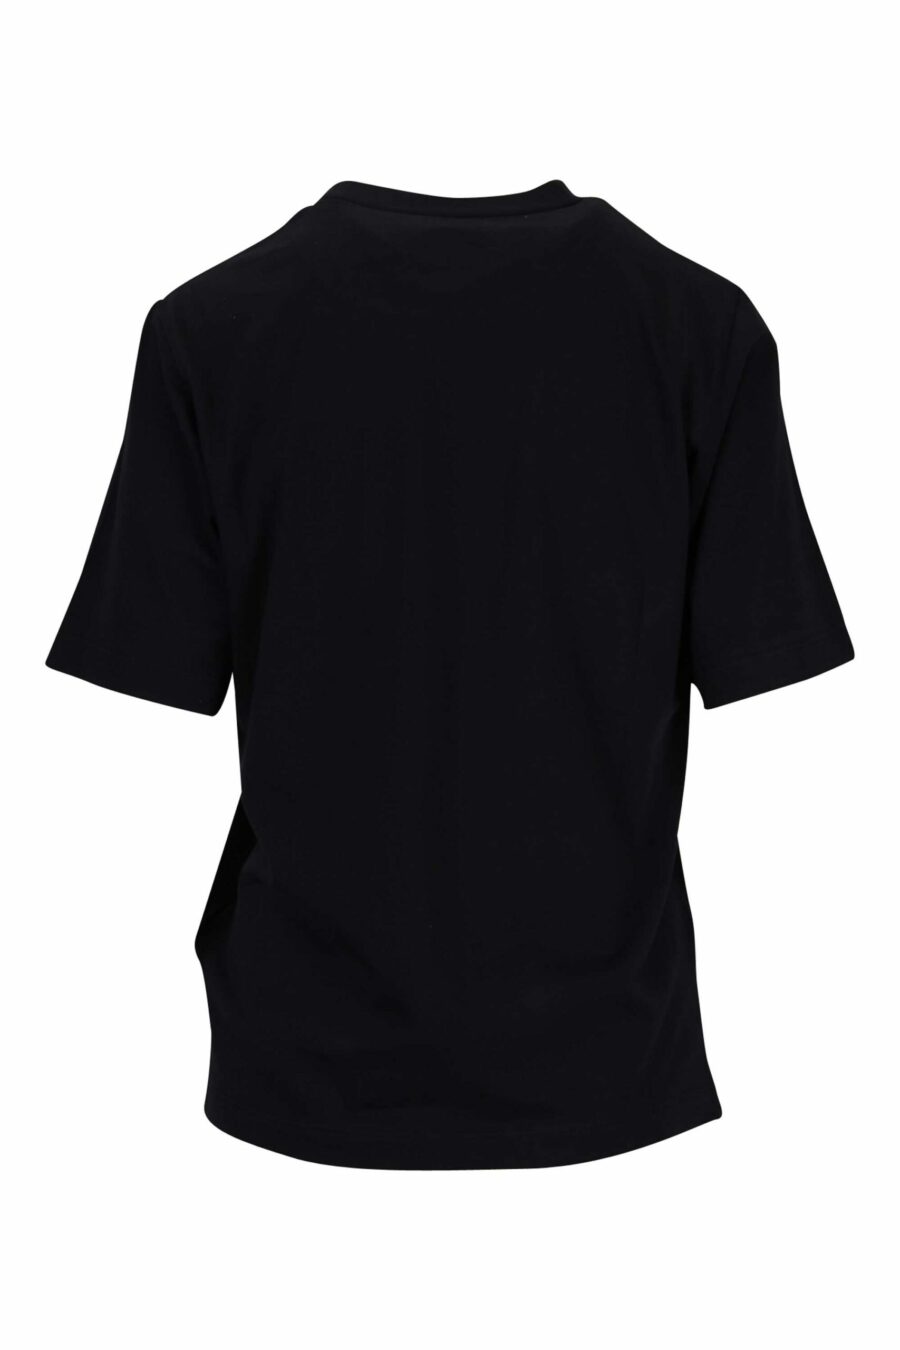 Schwarzes Oversize-T-Shirt mit Maxilogo "icon darling" - 8054148405885 1 skaliert